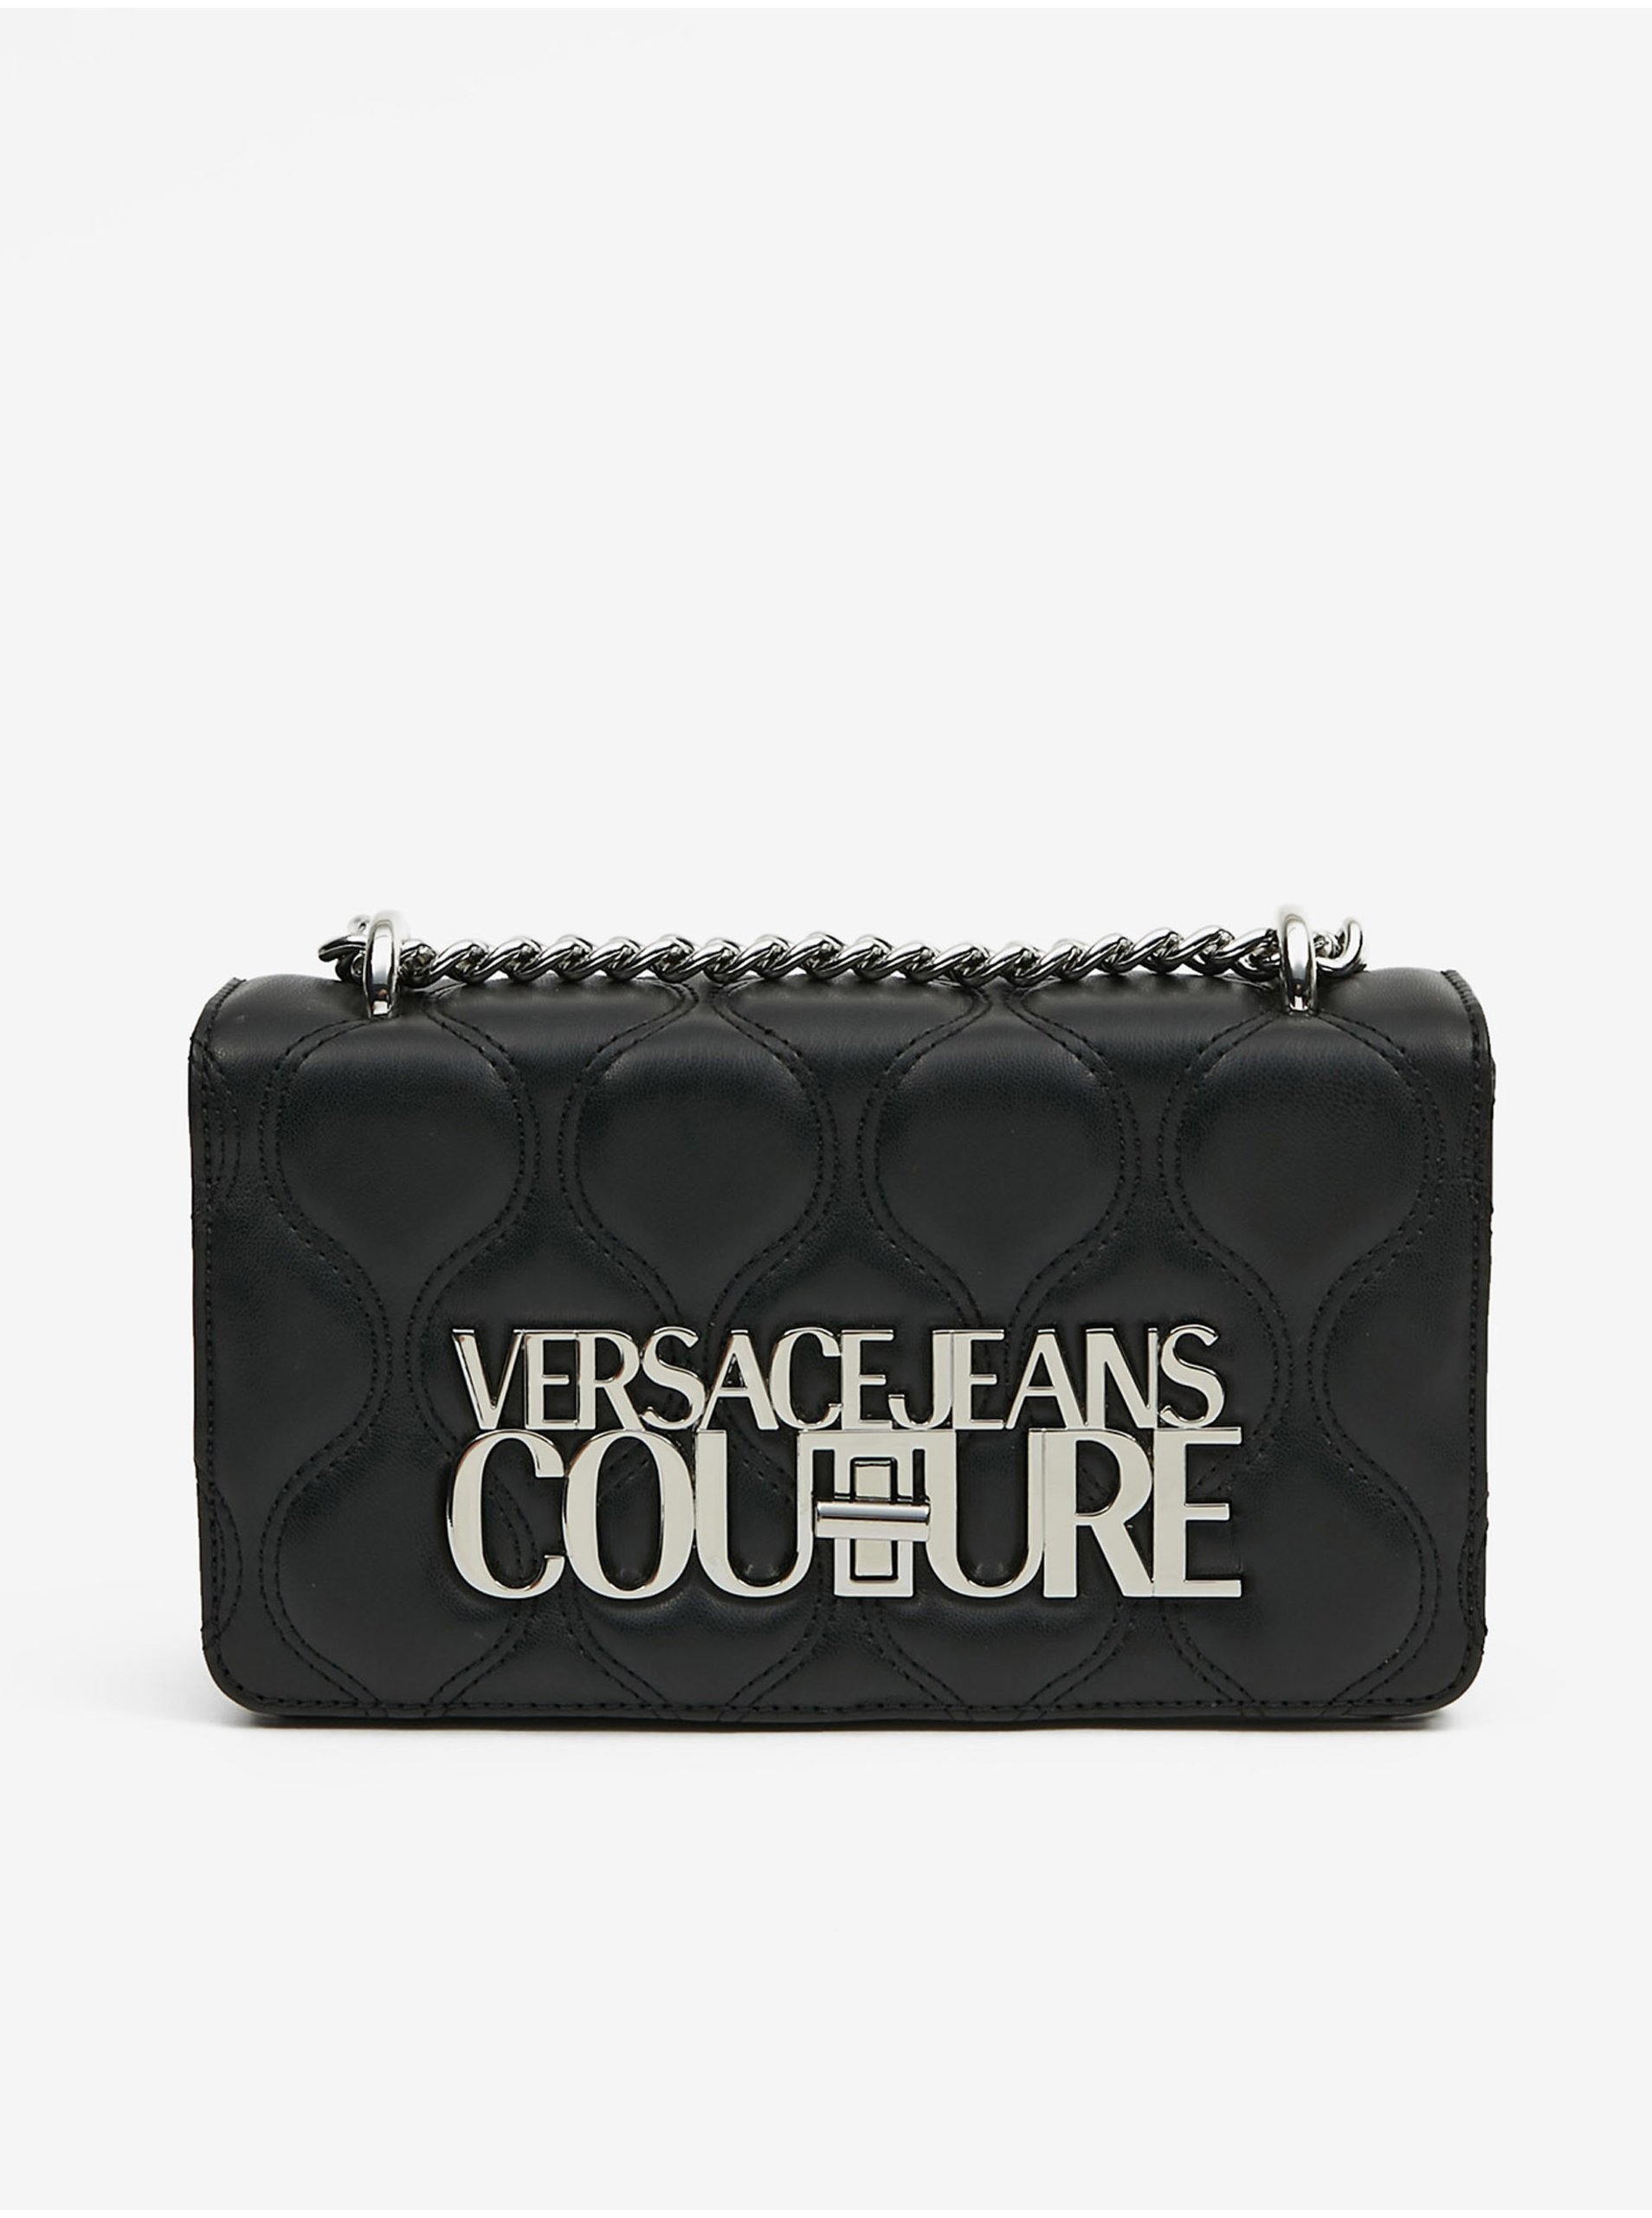 Lacno Kabelky pre ženy Versace Jeans Couture - čierna